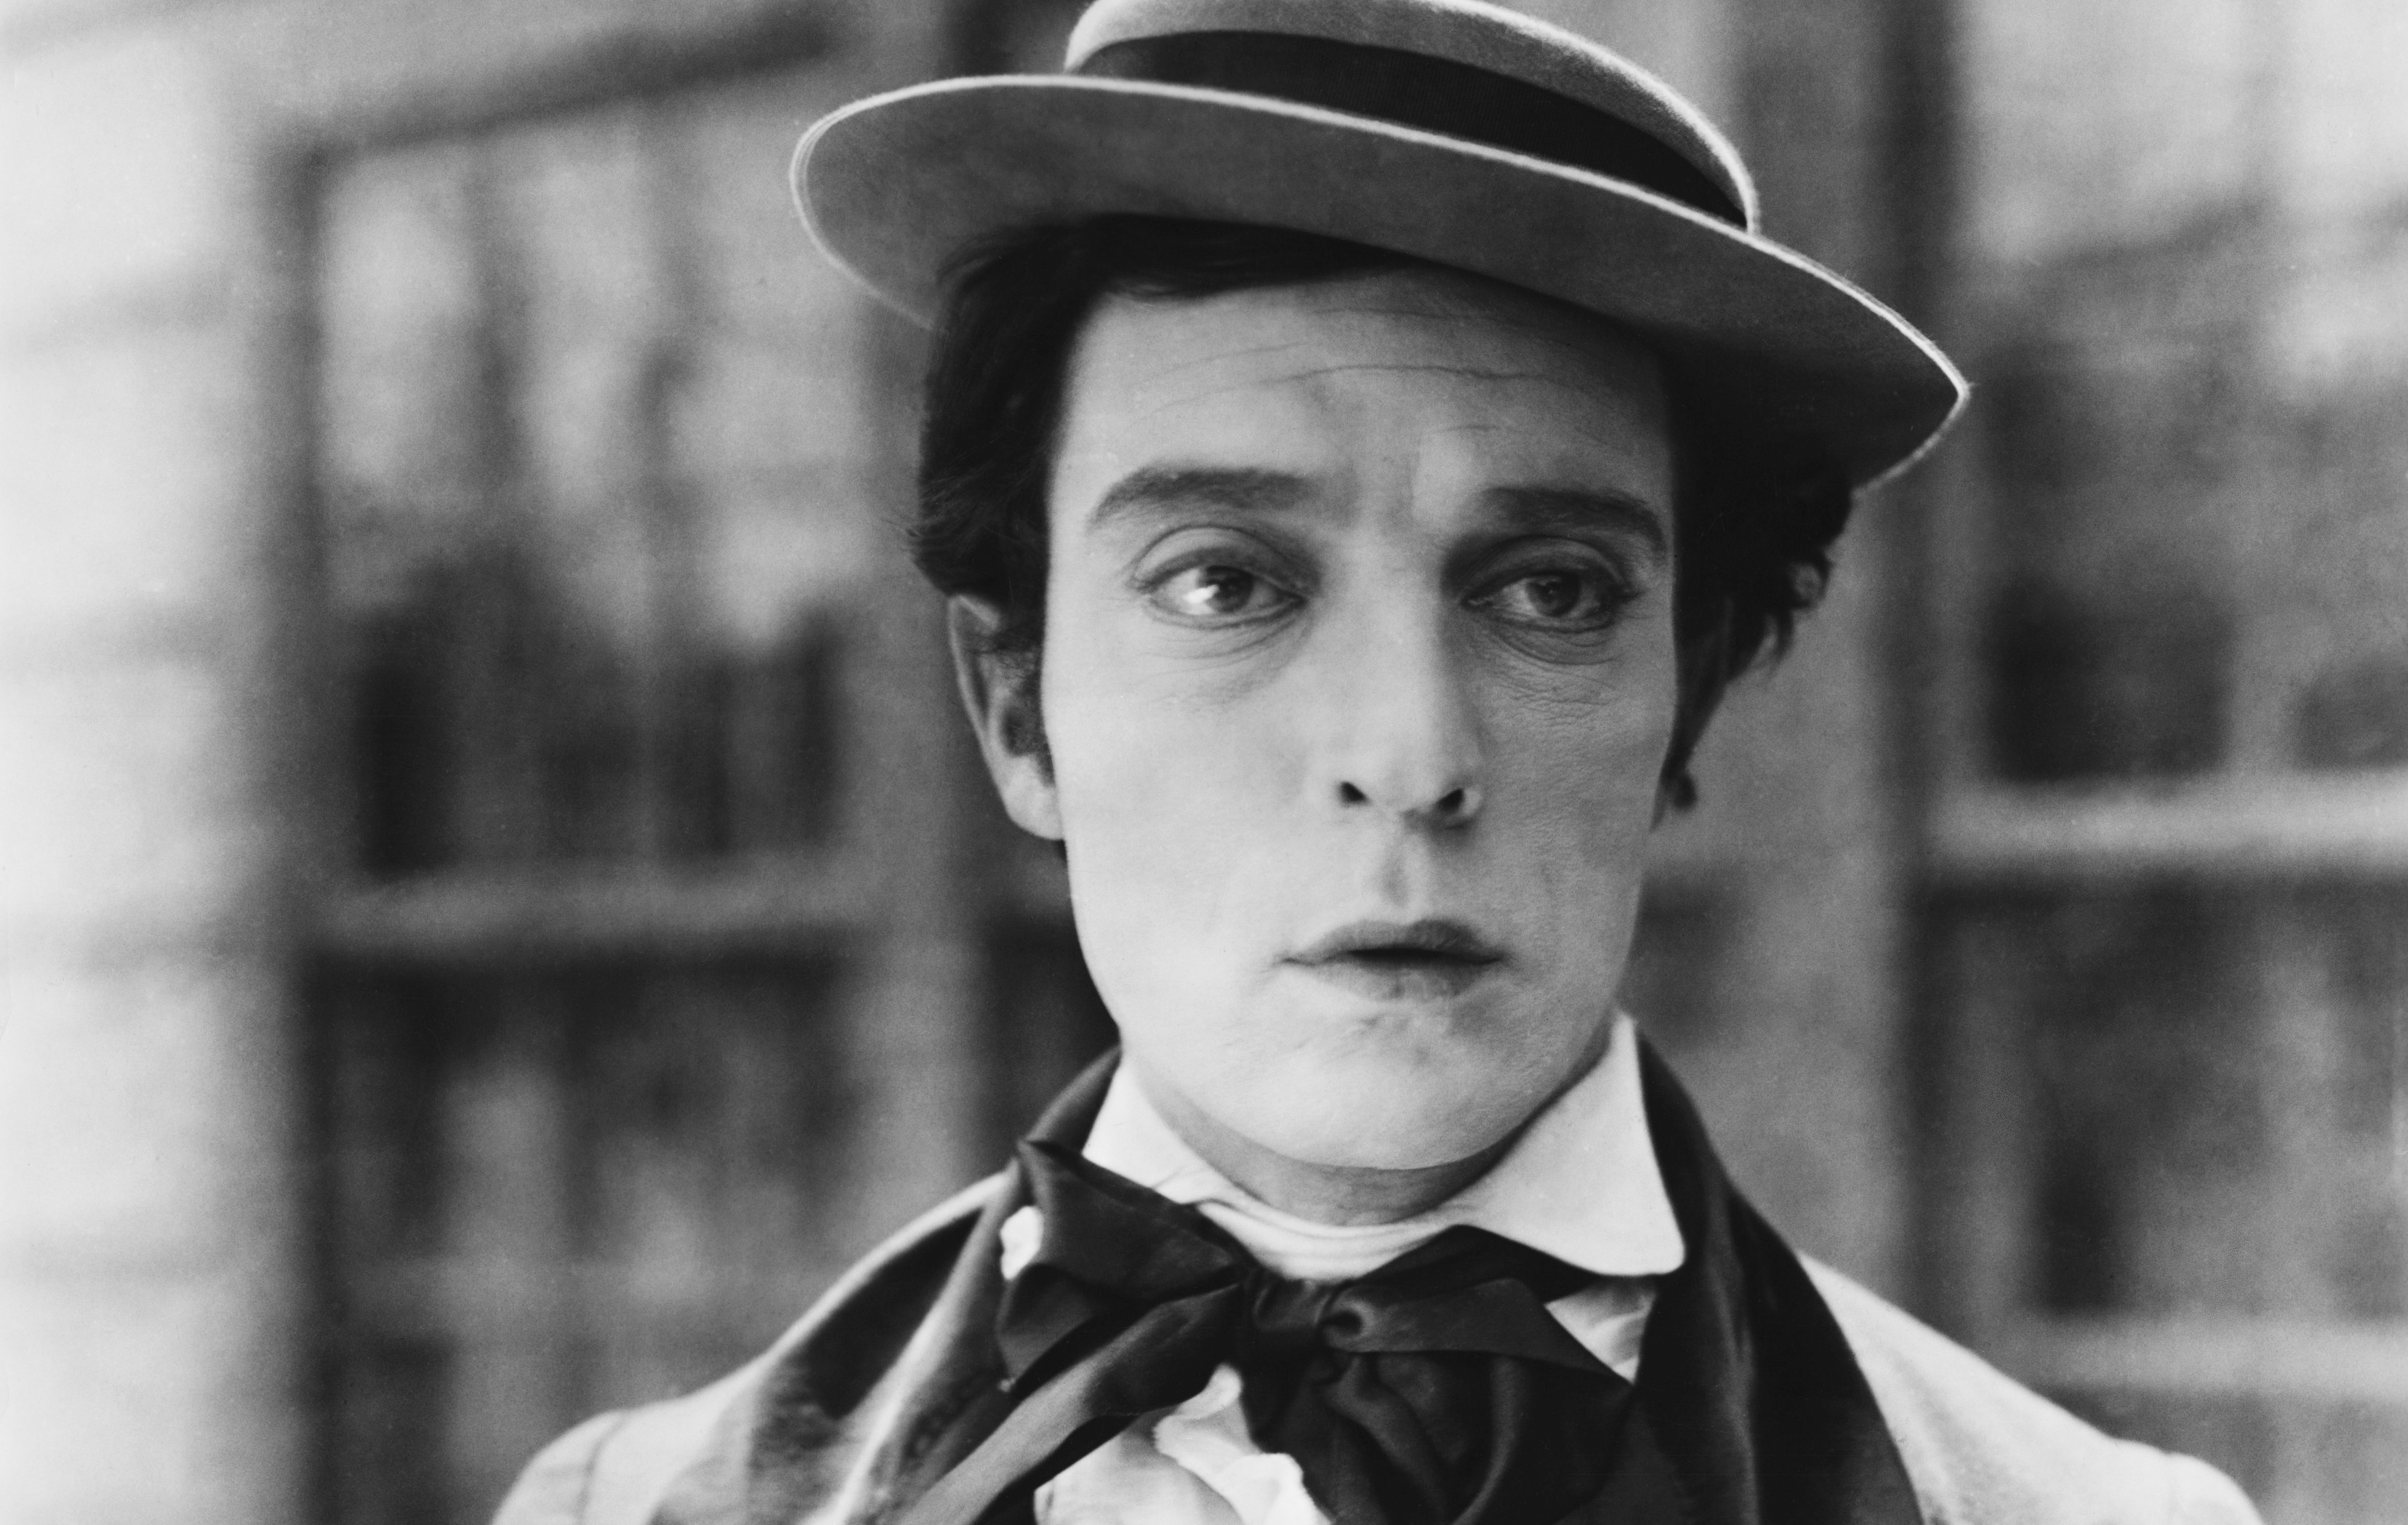 ¿Quién interpretará a Buster Keaton en la serie que se está preparando?